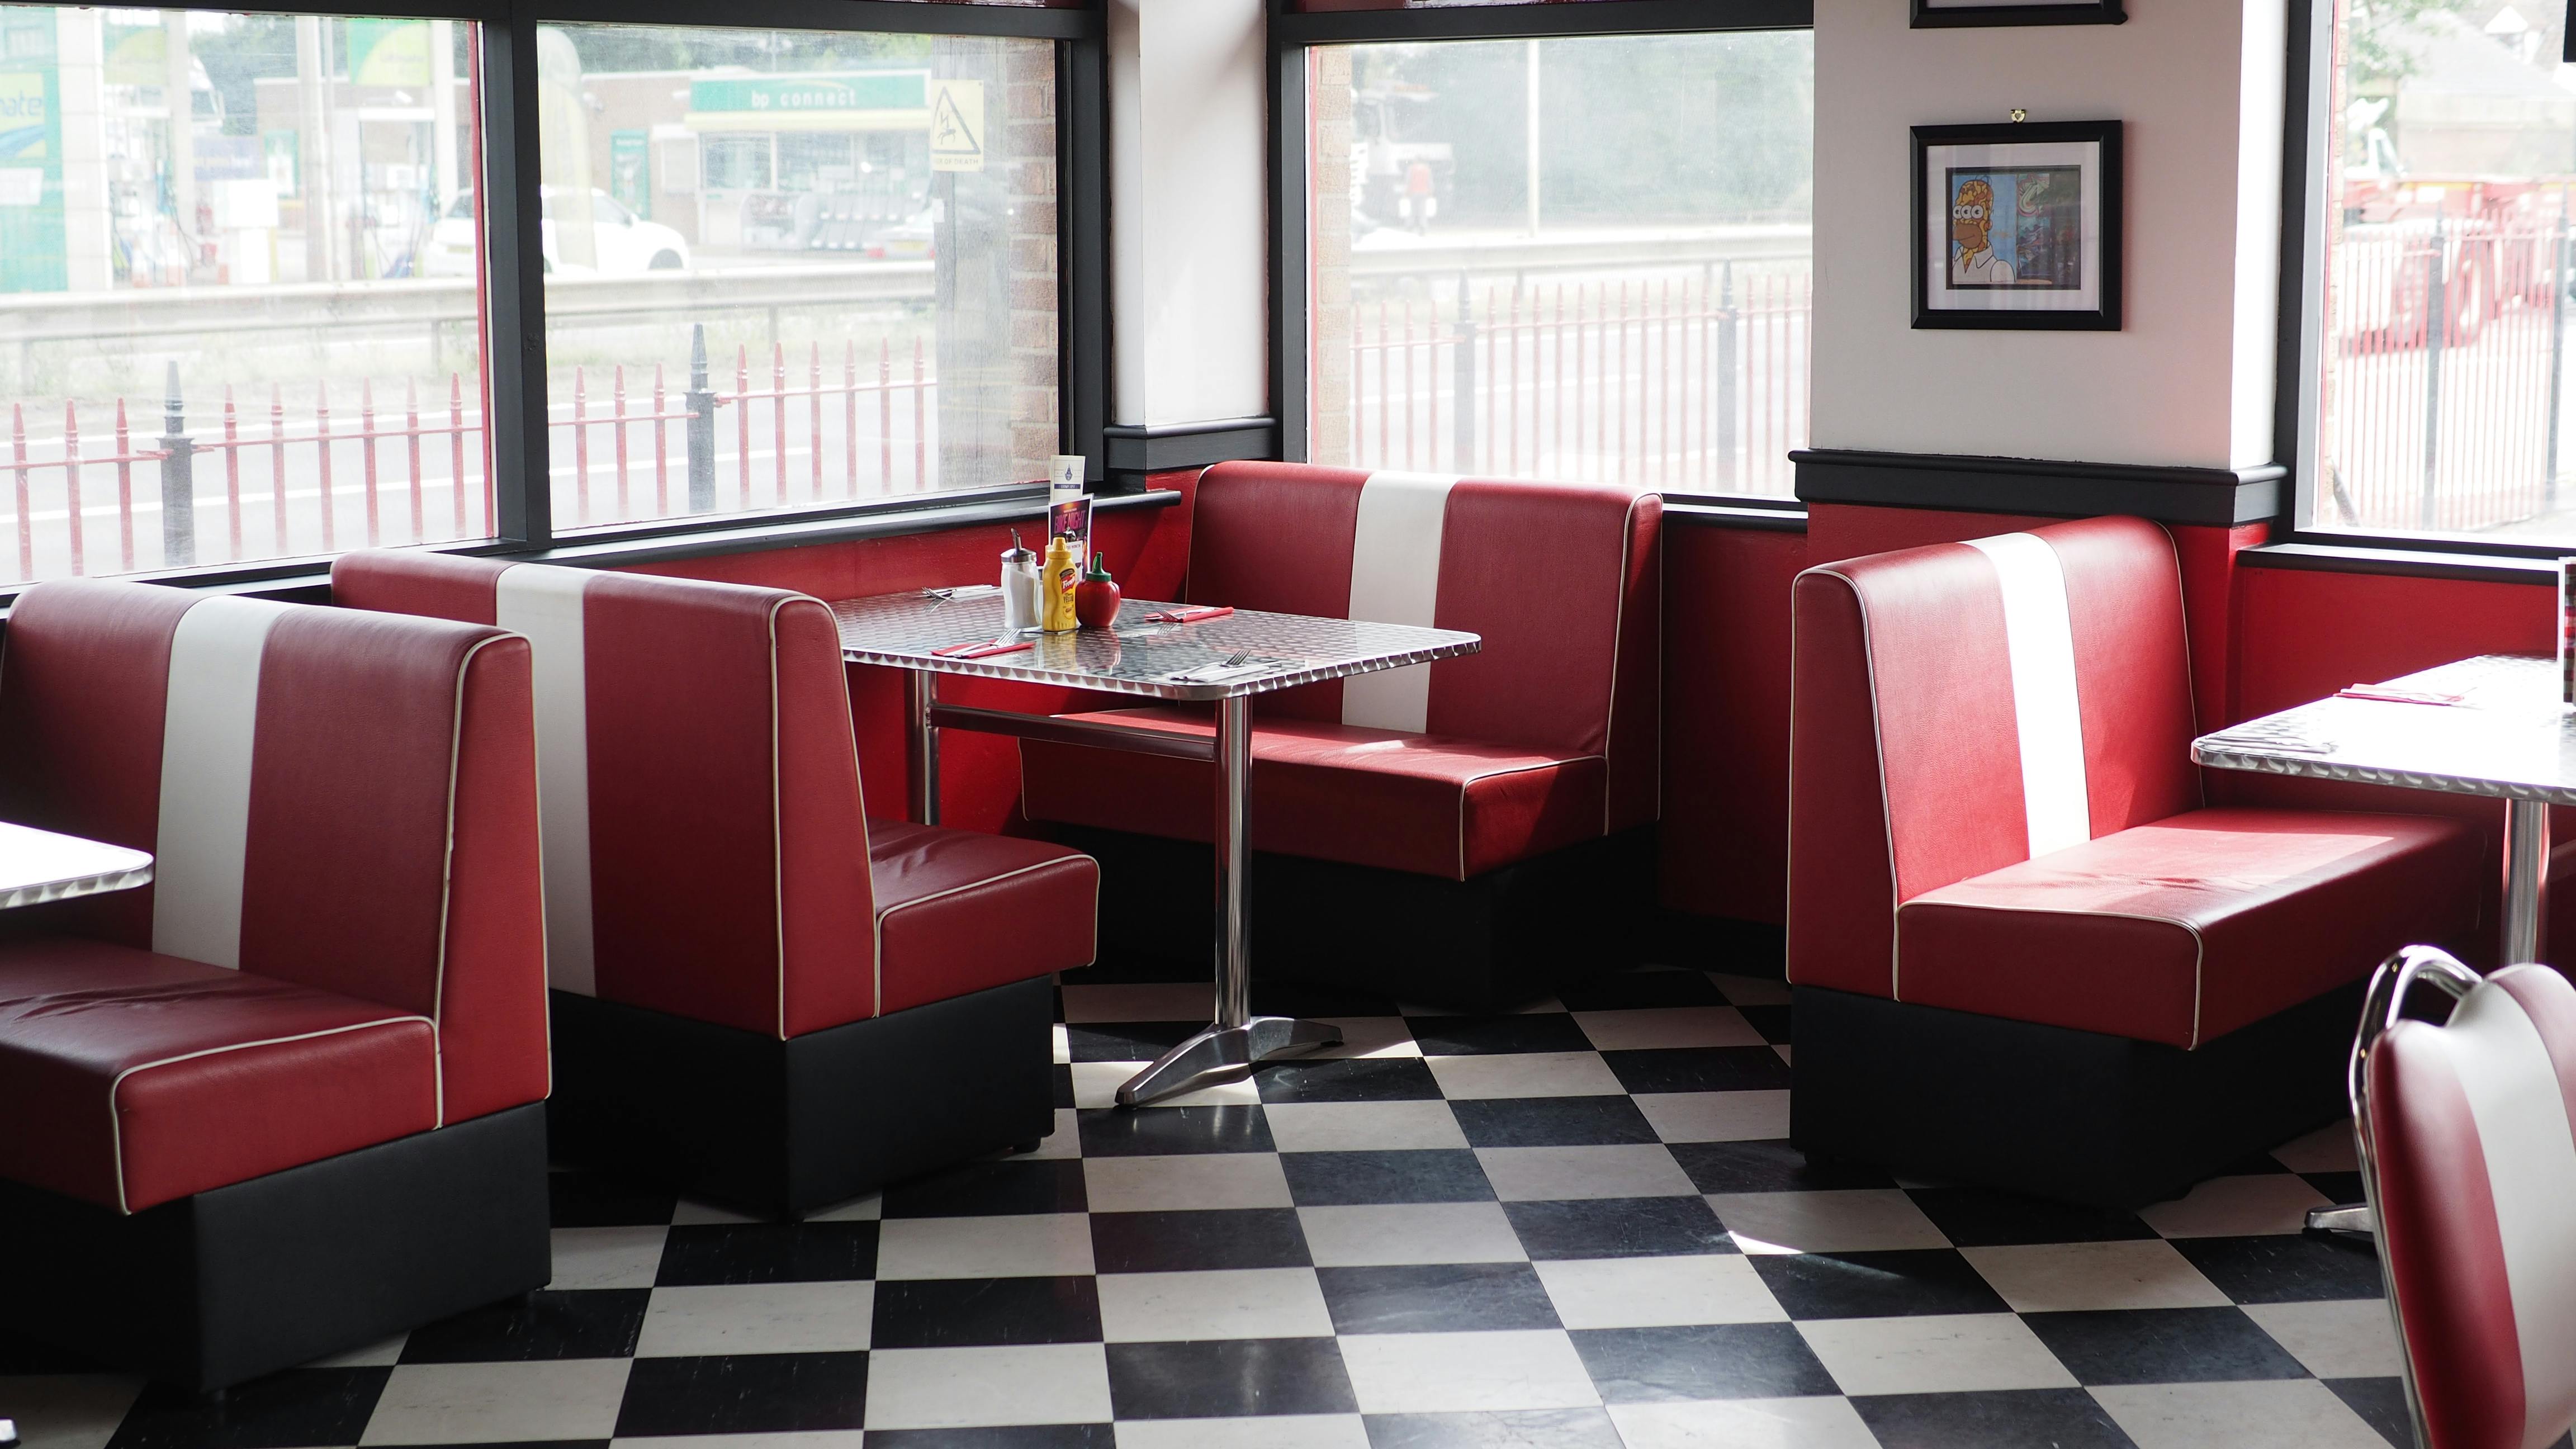 Kostenloses Foto Zum Thema American Diner Interieur